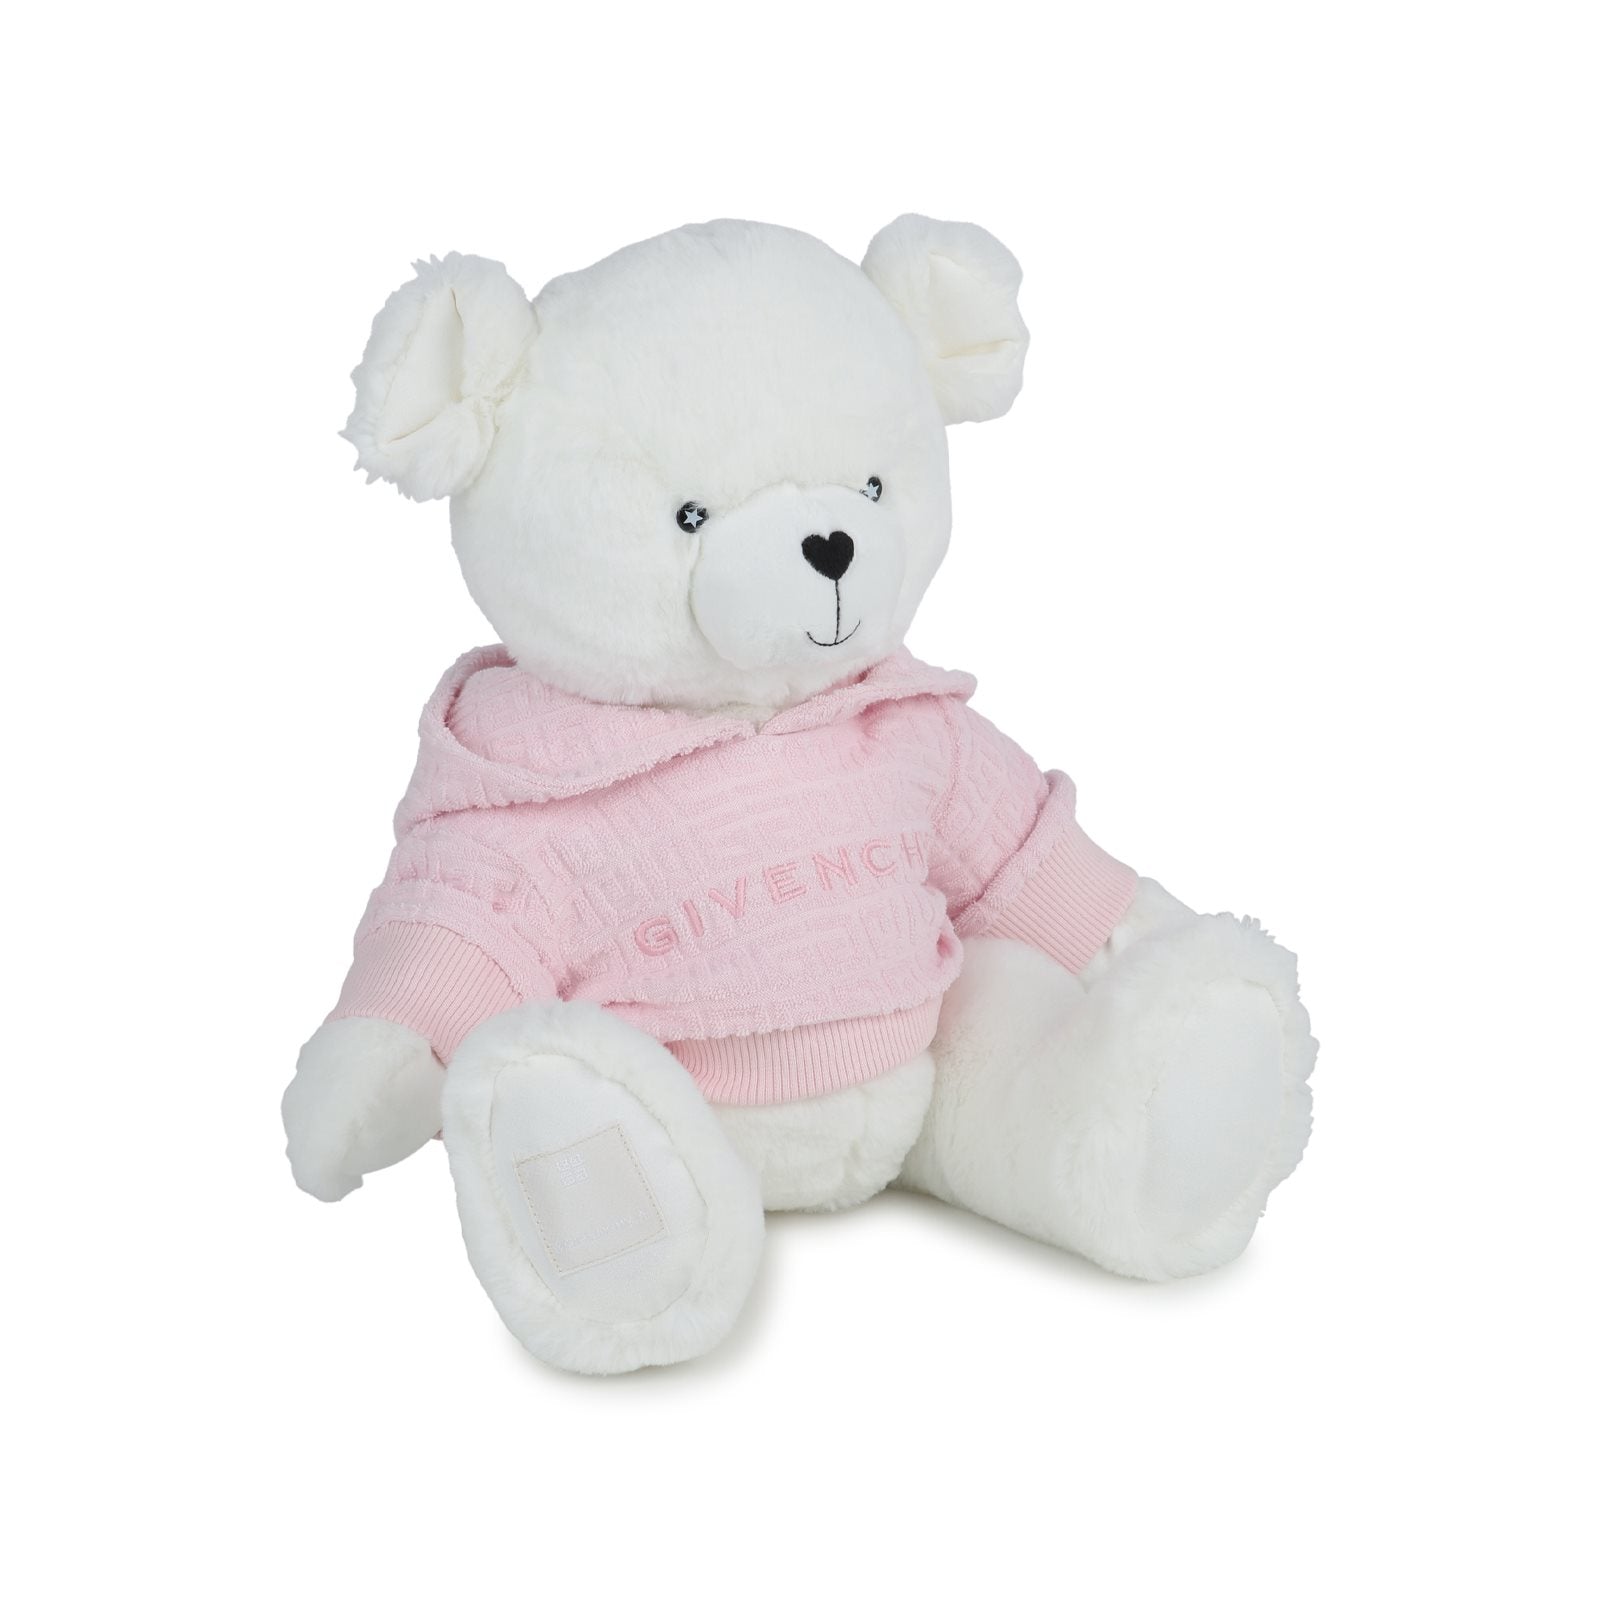 Soft teddybear with 4G hoodie